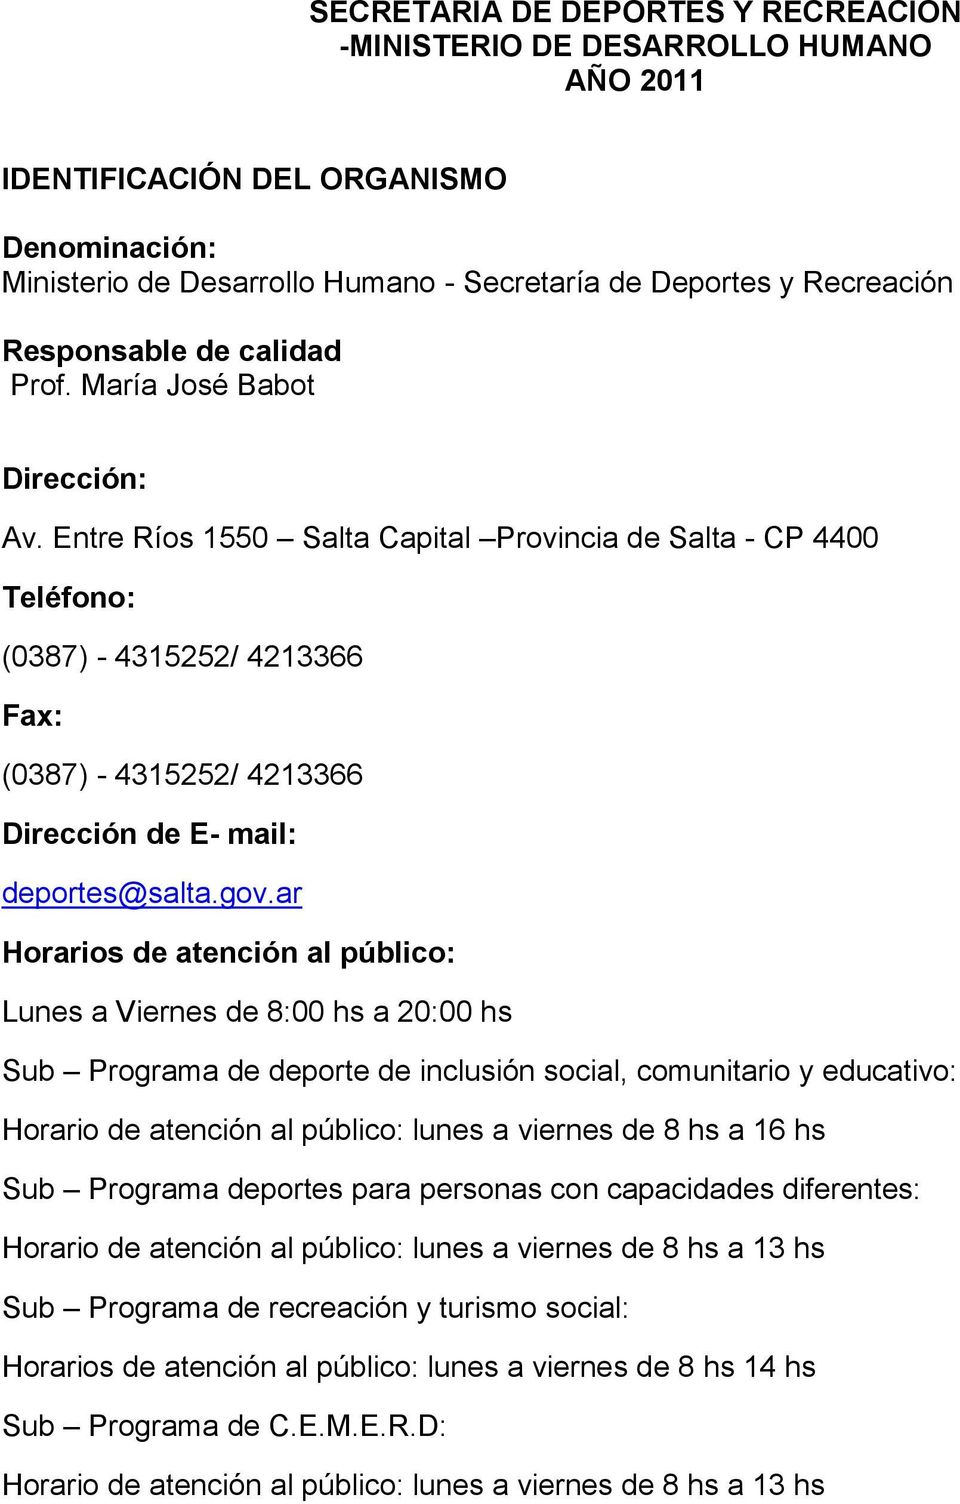 Entre Ríos 1550 Salta Capital Provincia de Salta - CP 4400 Teléfono: (0387) - 4315252/ 4213366 Fax: (0387) - 4315252/ 4213366 Dirección de E- mail: deportes@salta.gov.